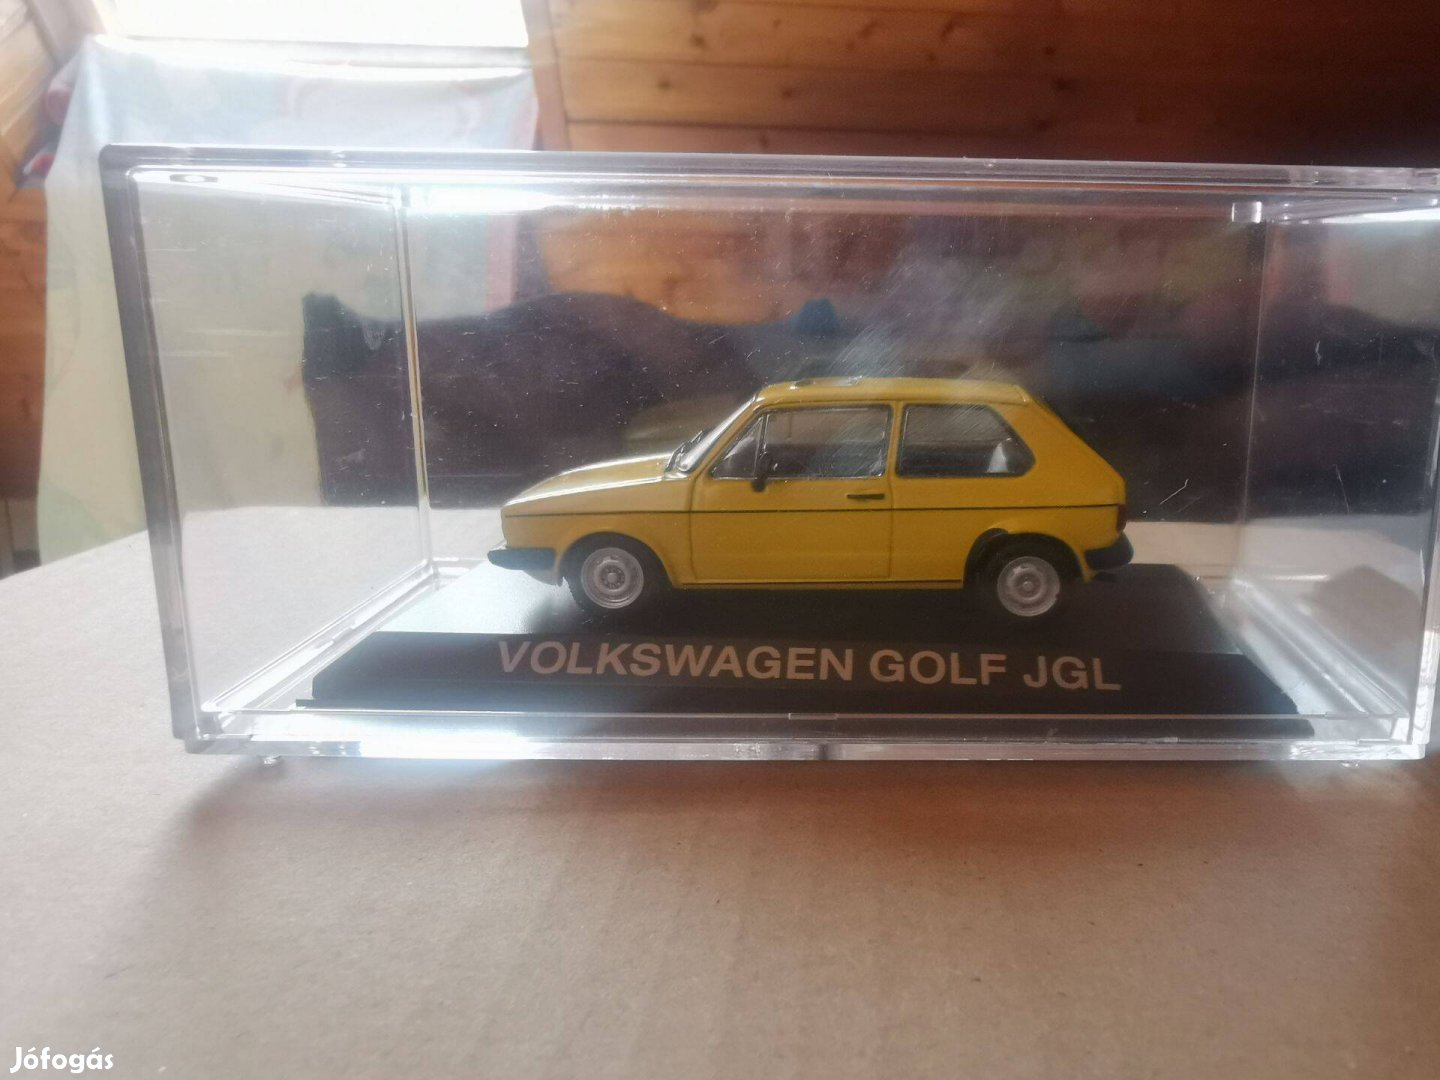 1:43 Volkswagen Golf Jgl